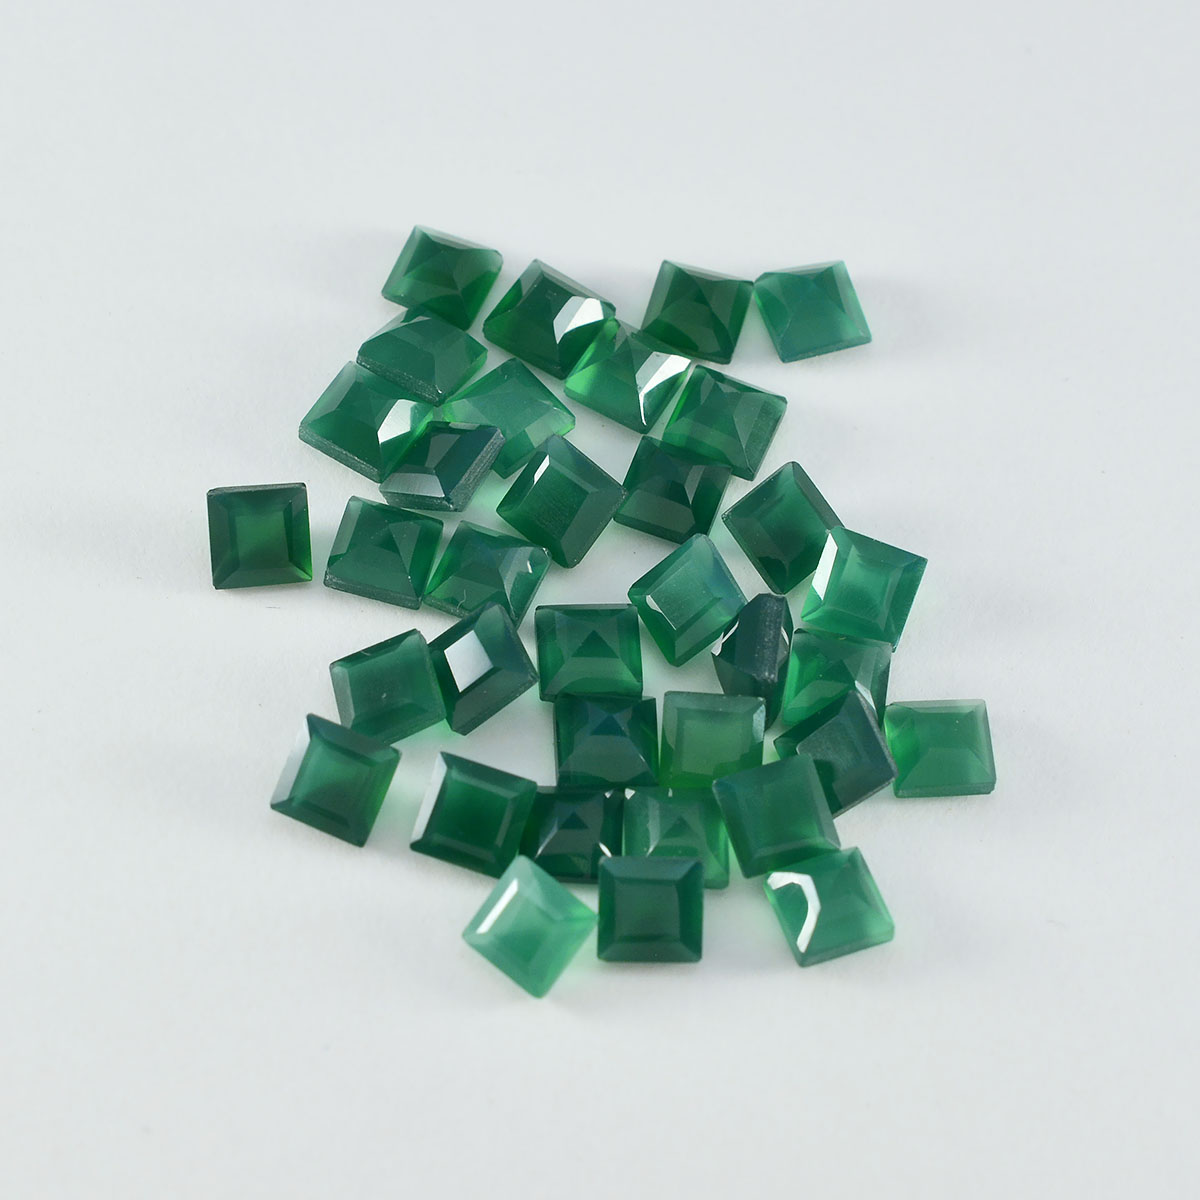 Riyogems 1 Stück echter grüner Onyx, facettiert, 5 x 5 mm, quadratische Form, gut aussehender, hochwertiger loser Edelstein